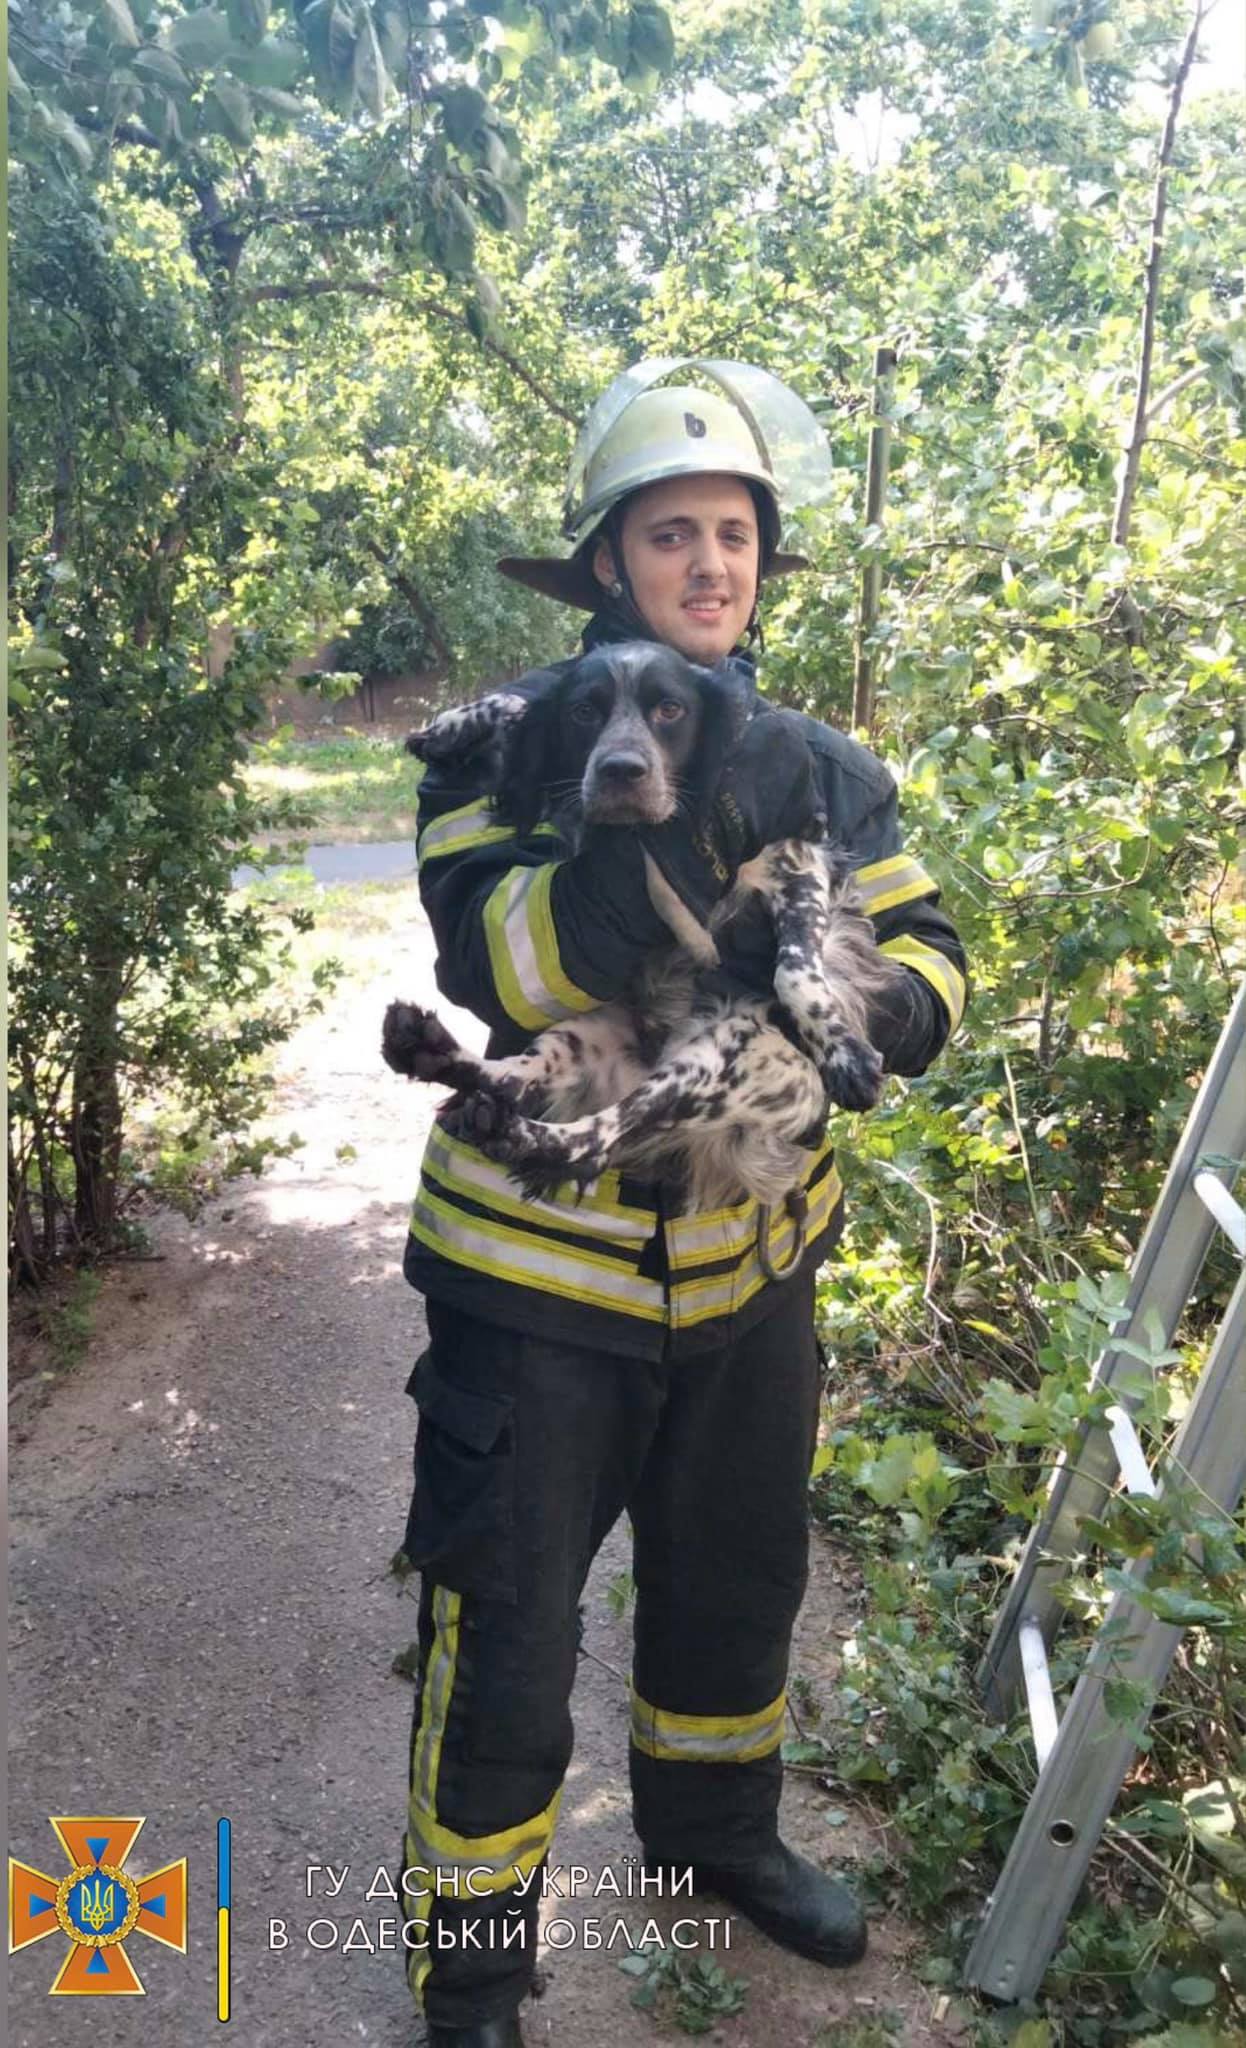 пожарные спасли собаку